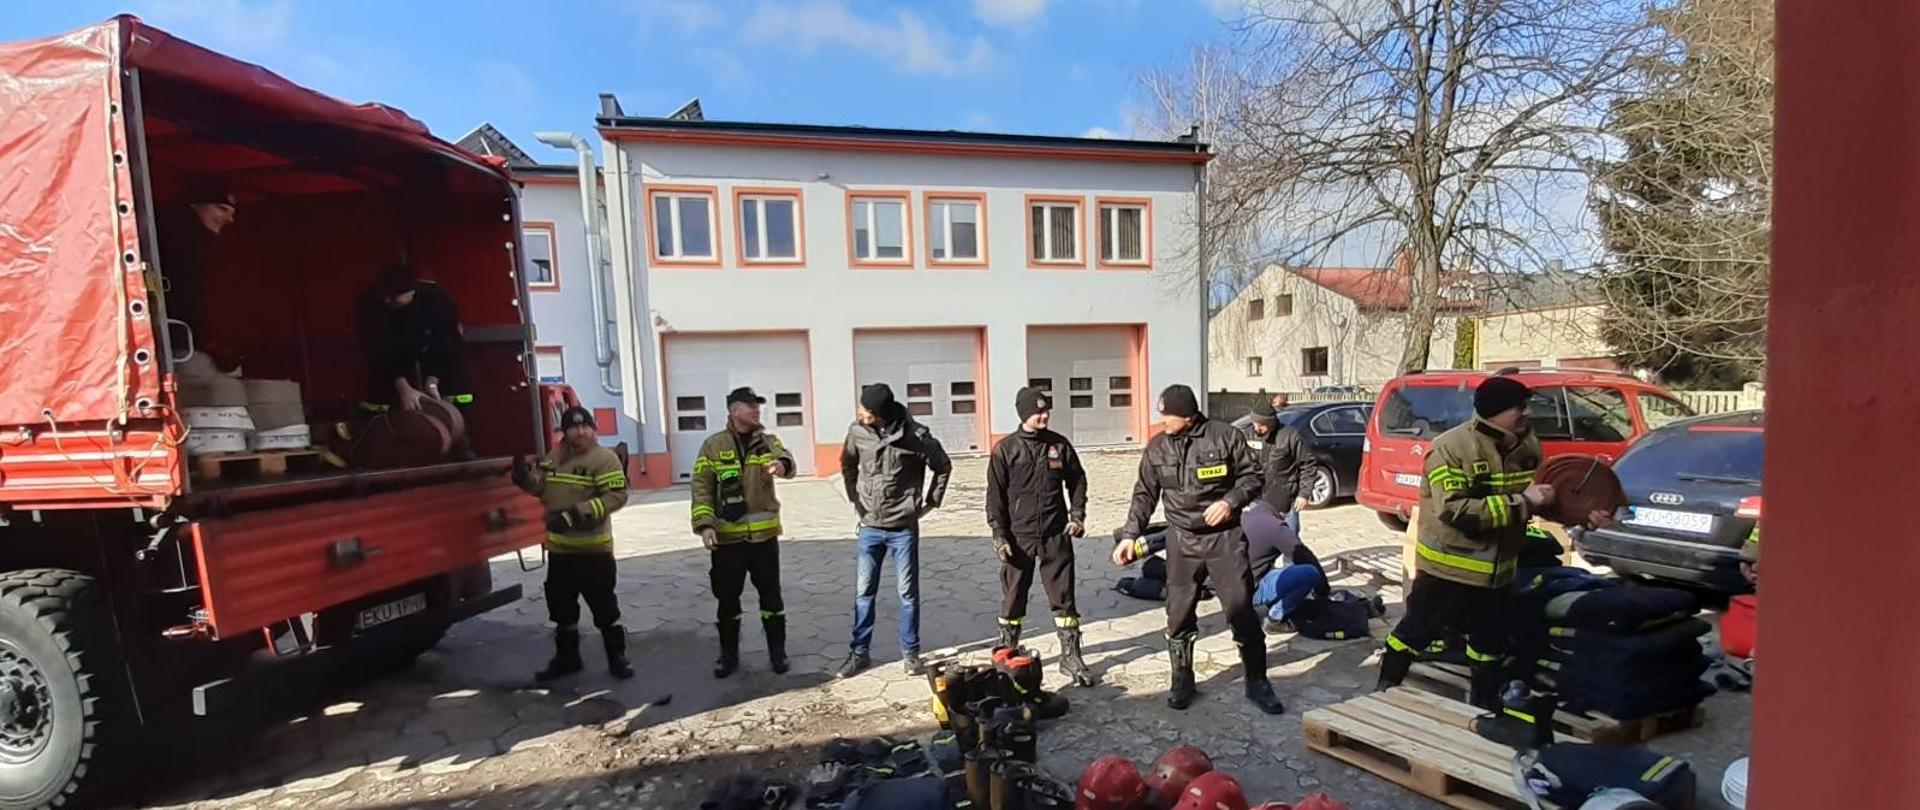 Strażacy Komendy Powiatowej PSP w Kutnie układają w pojeździe zebrany sprzęt pożarniczy oraz odzież specjalną w postaci butów, hełmów